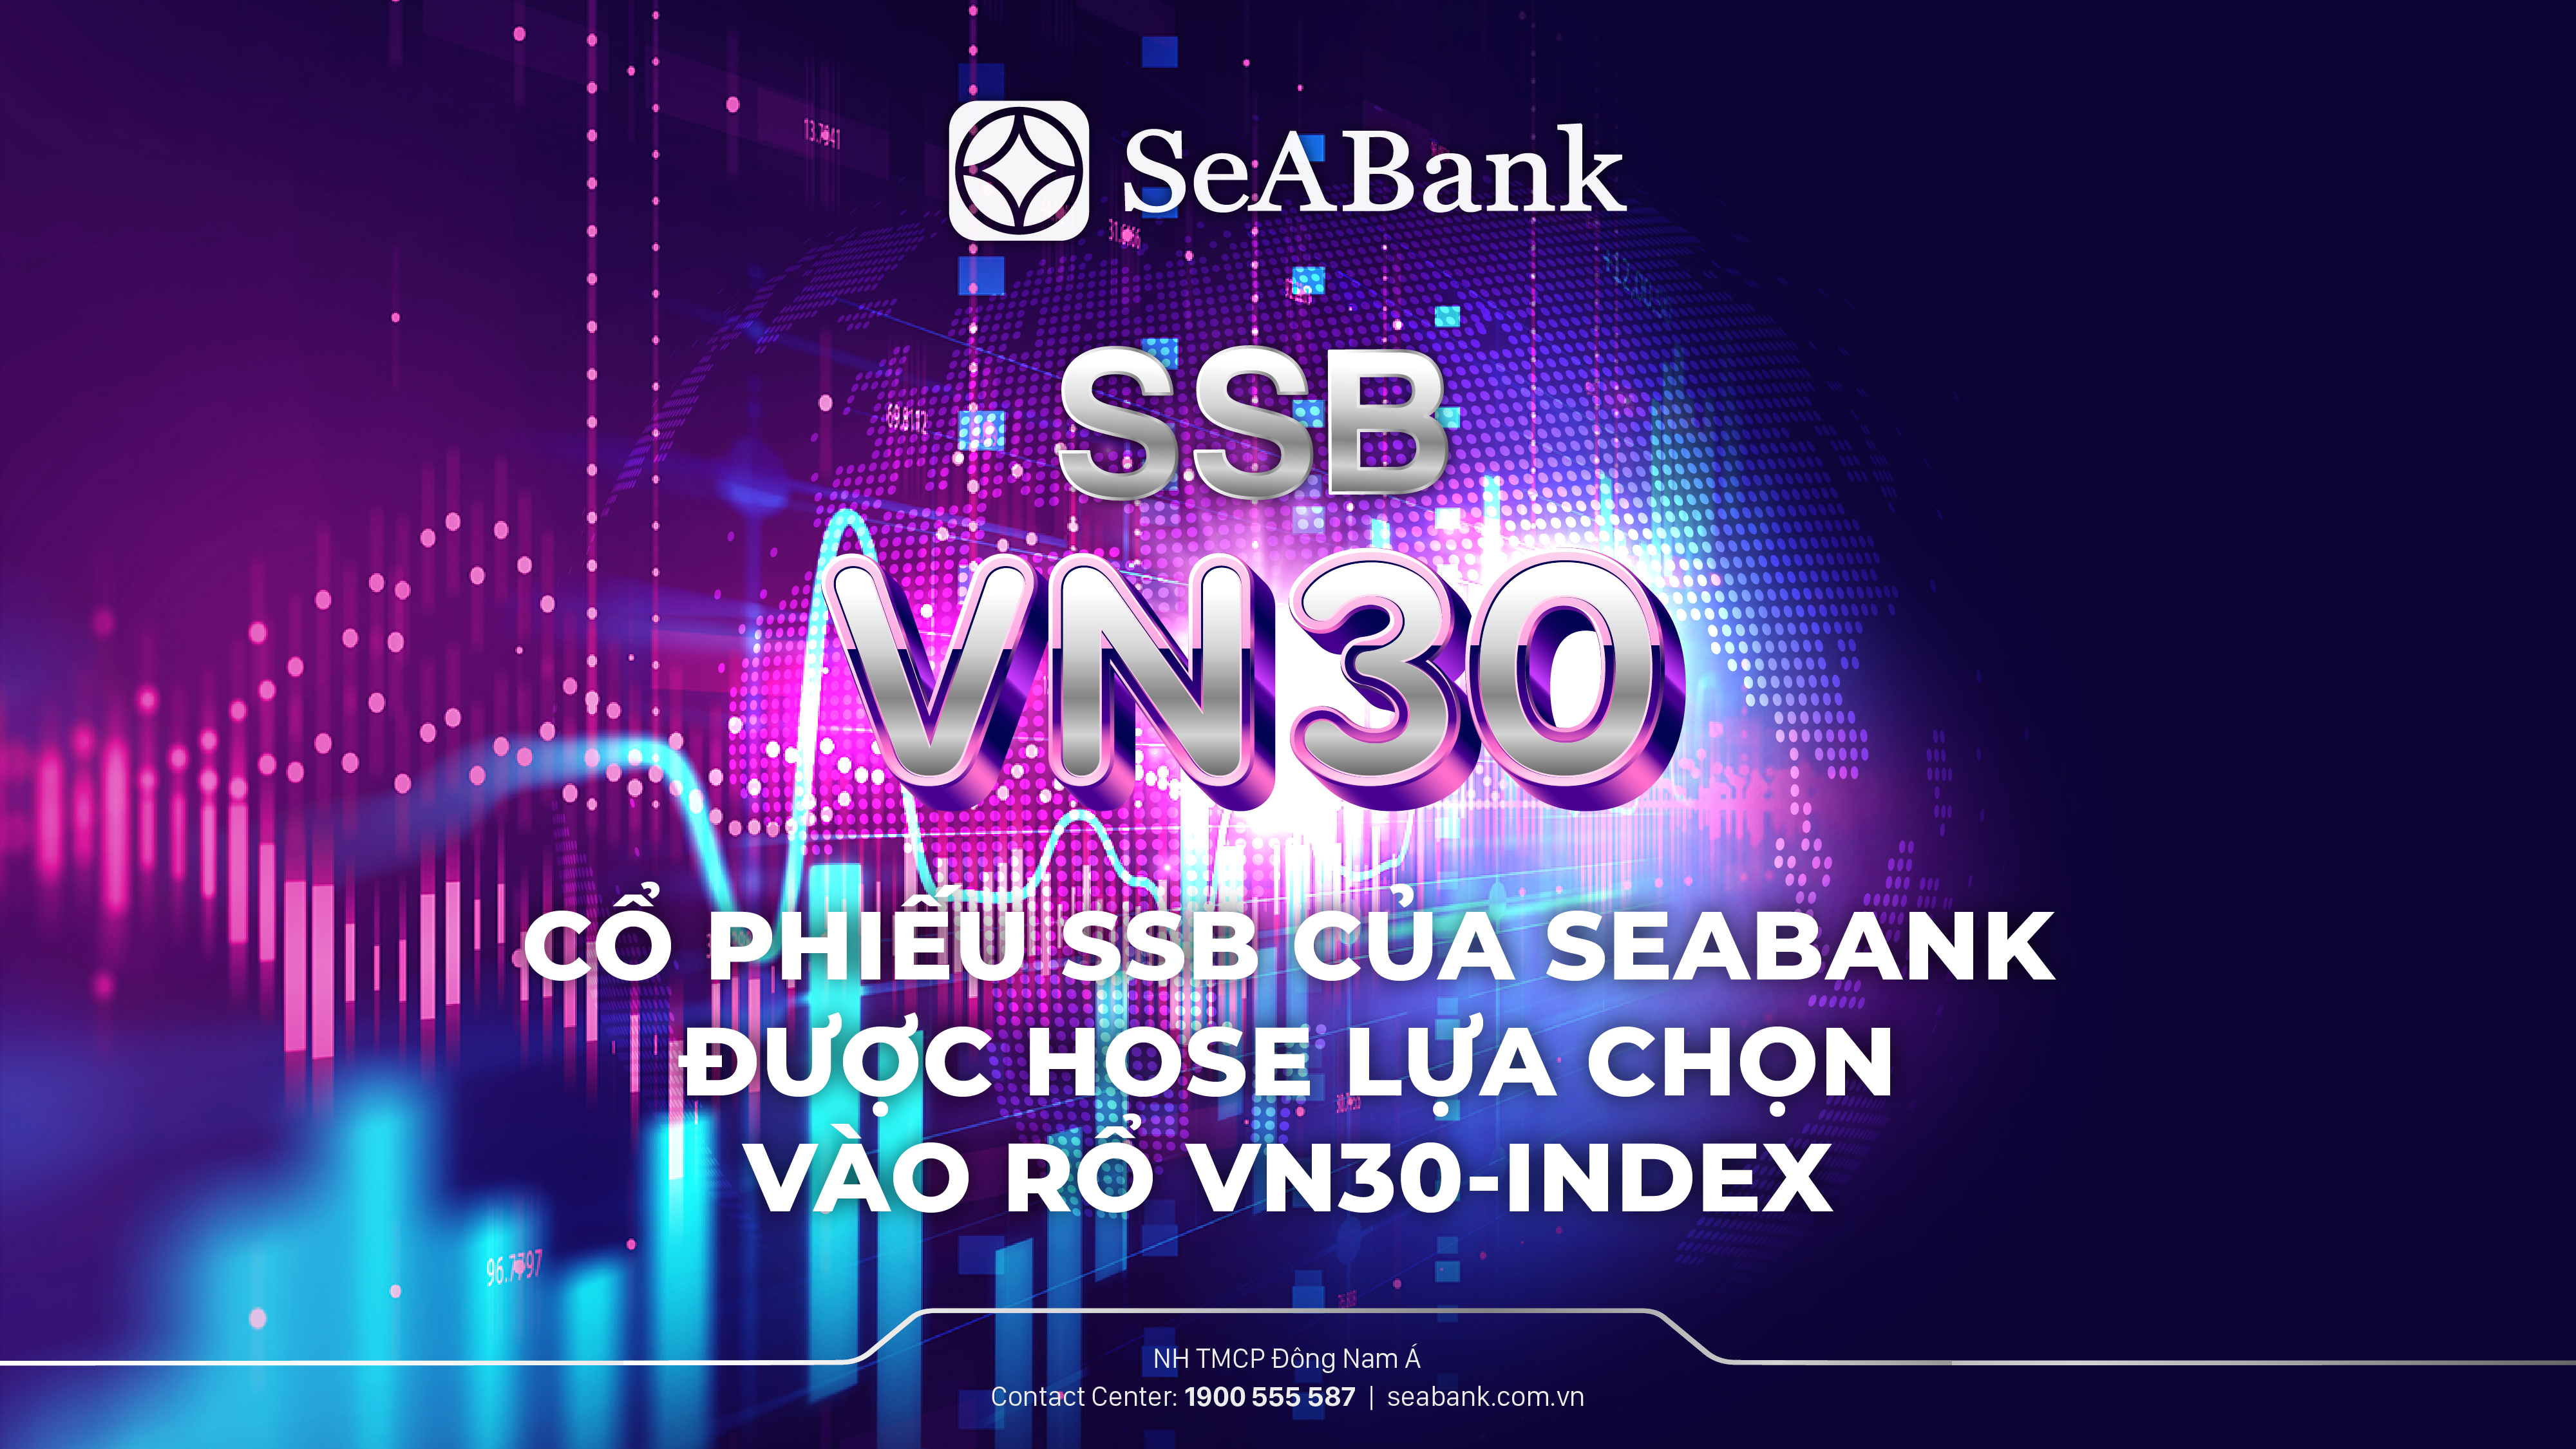 Cổ phiếu SSB của SeABank được HOSE lựa chọn vào rổ VN30                                    